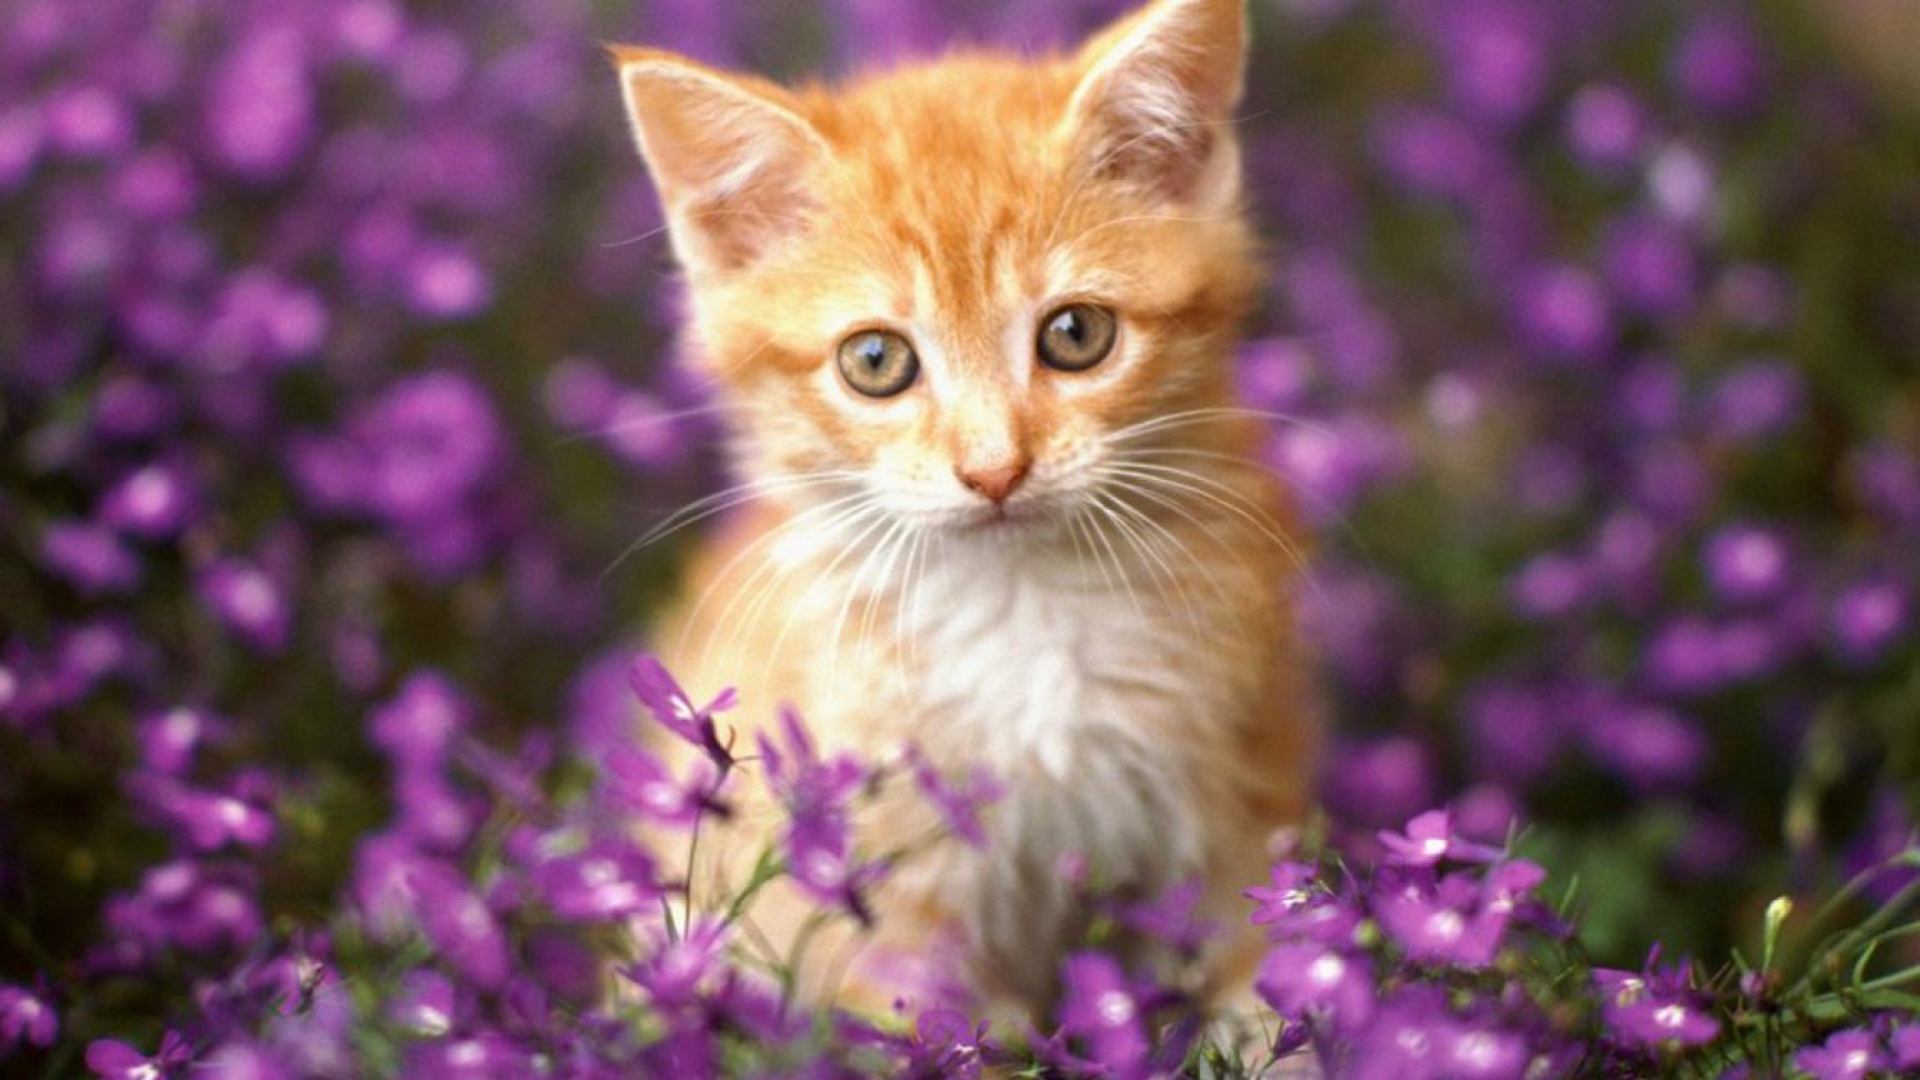 Обои Sweet Kitten In Flower Field 1920x1080